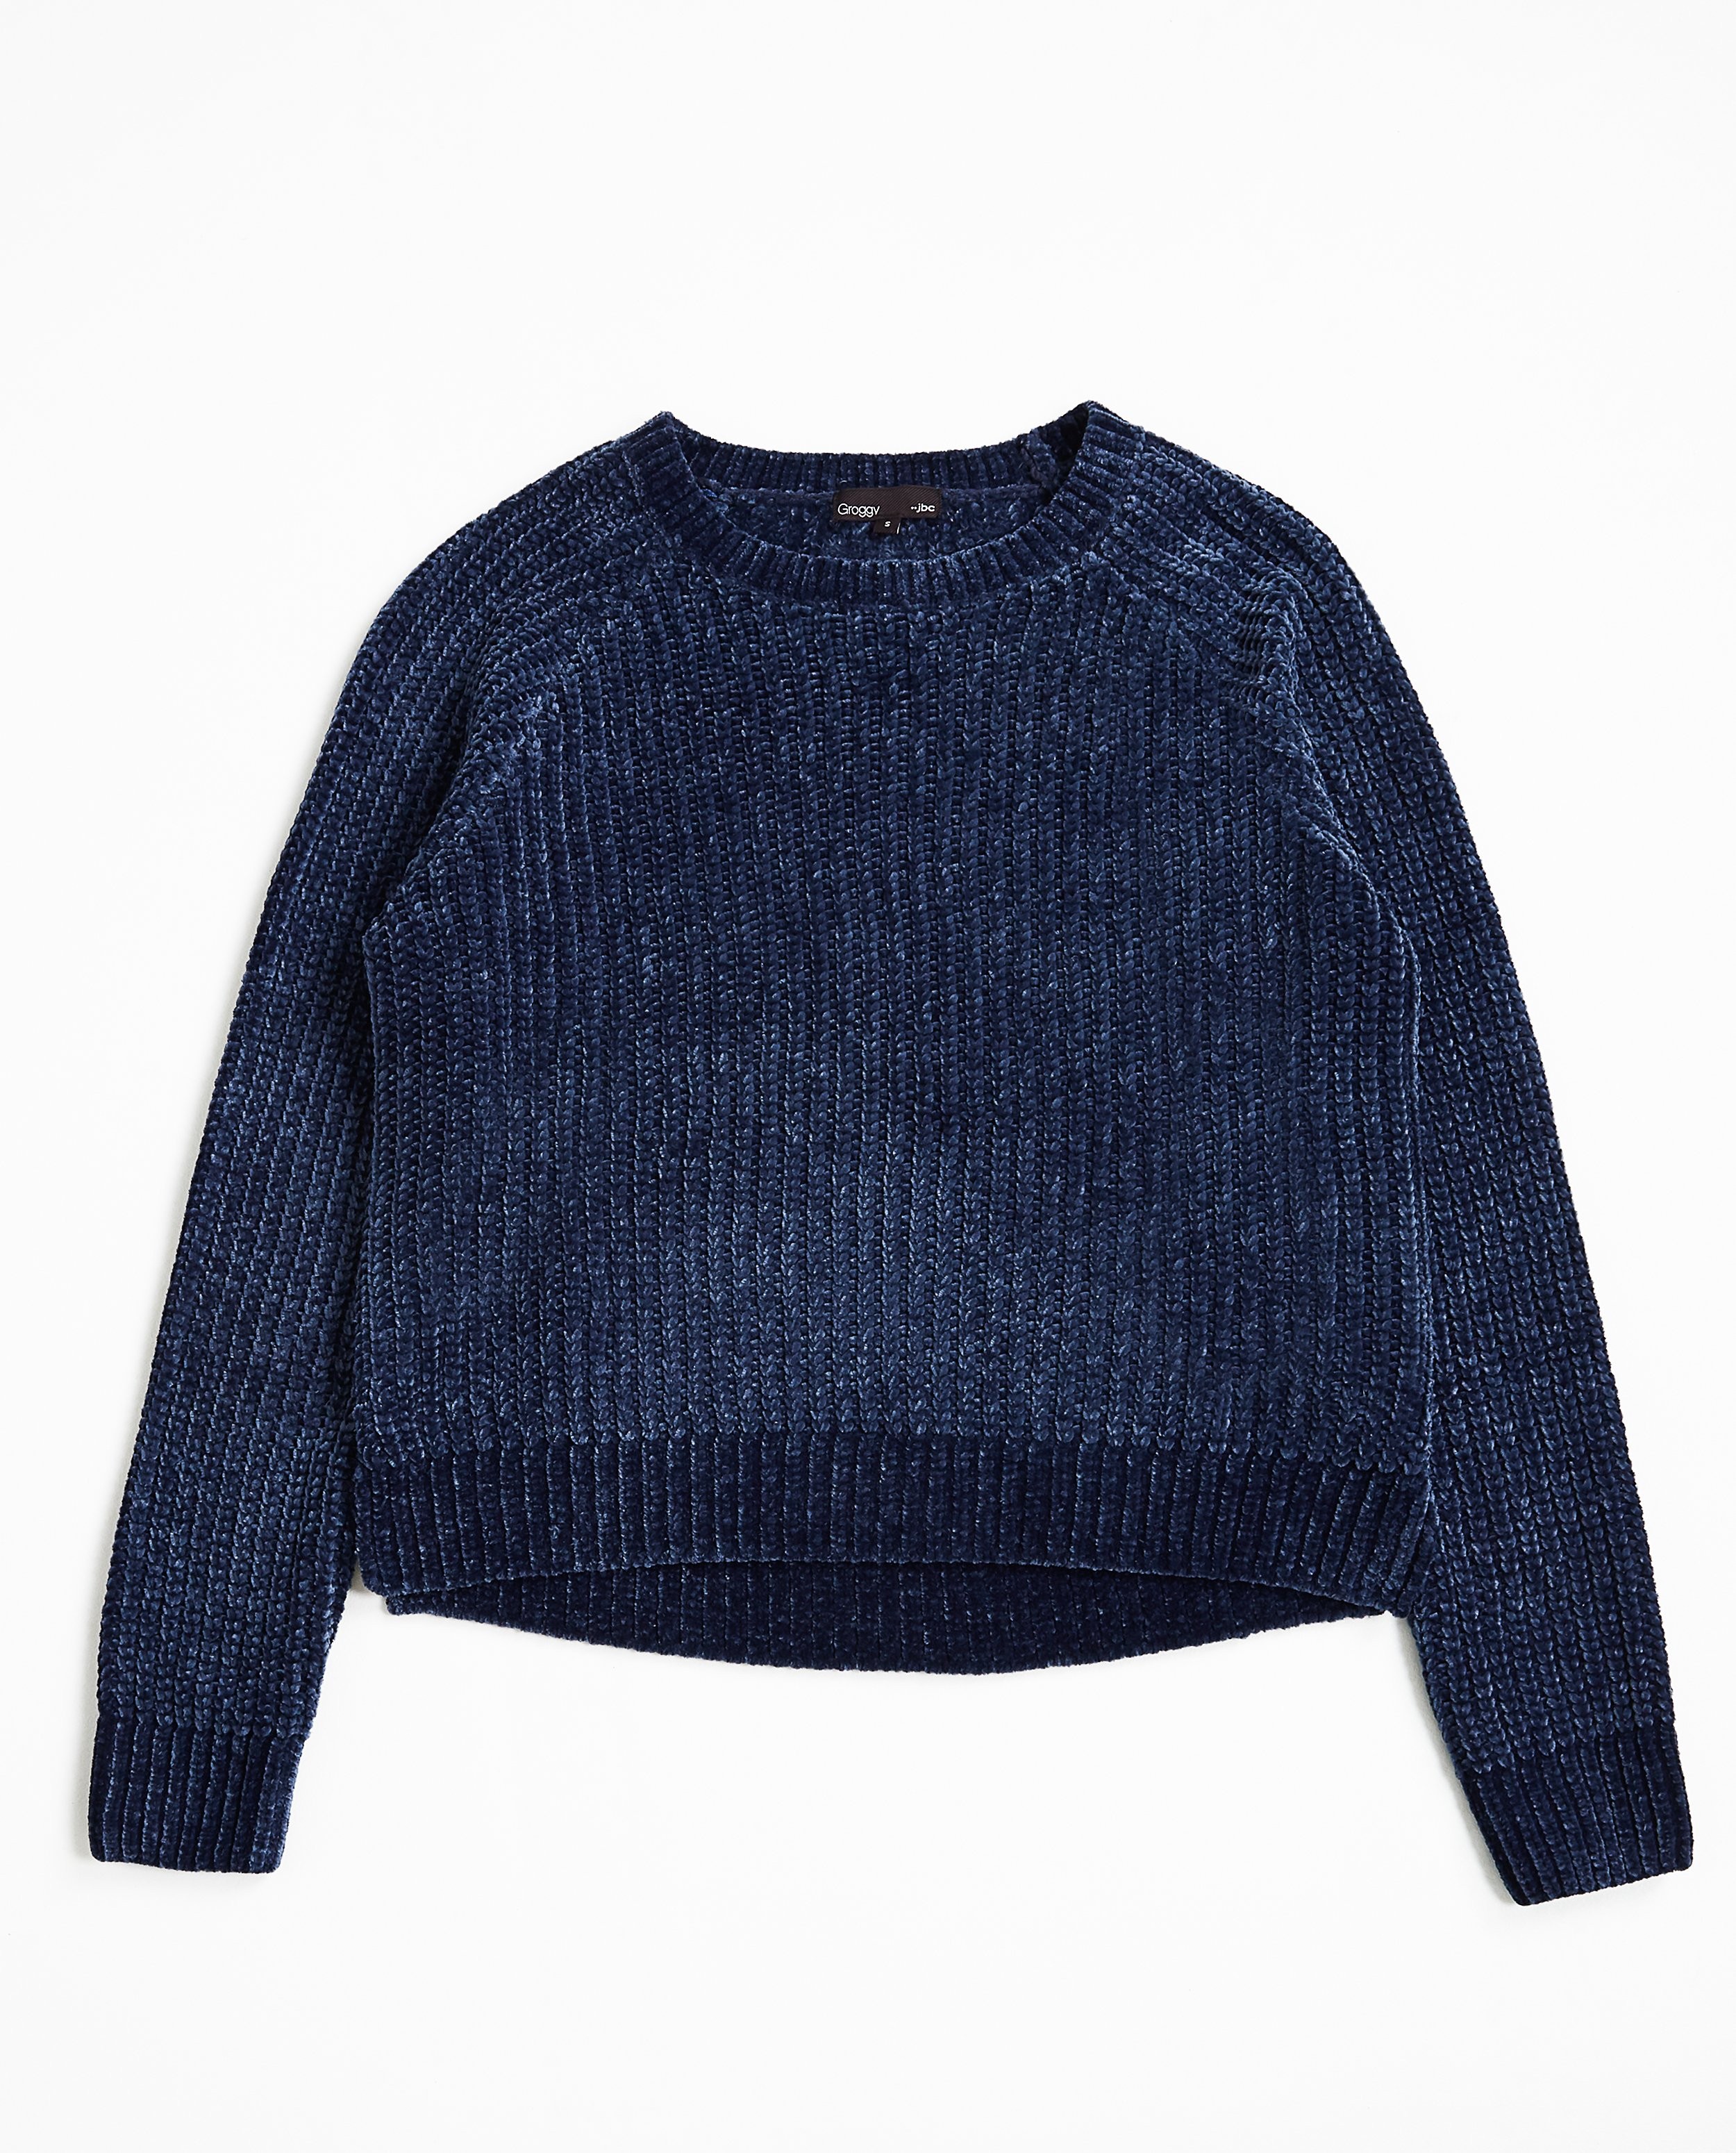 Pulls - Donkerblauwe velvet sweater